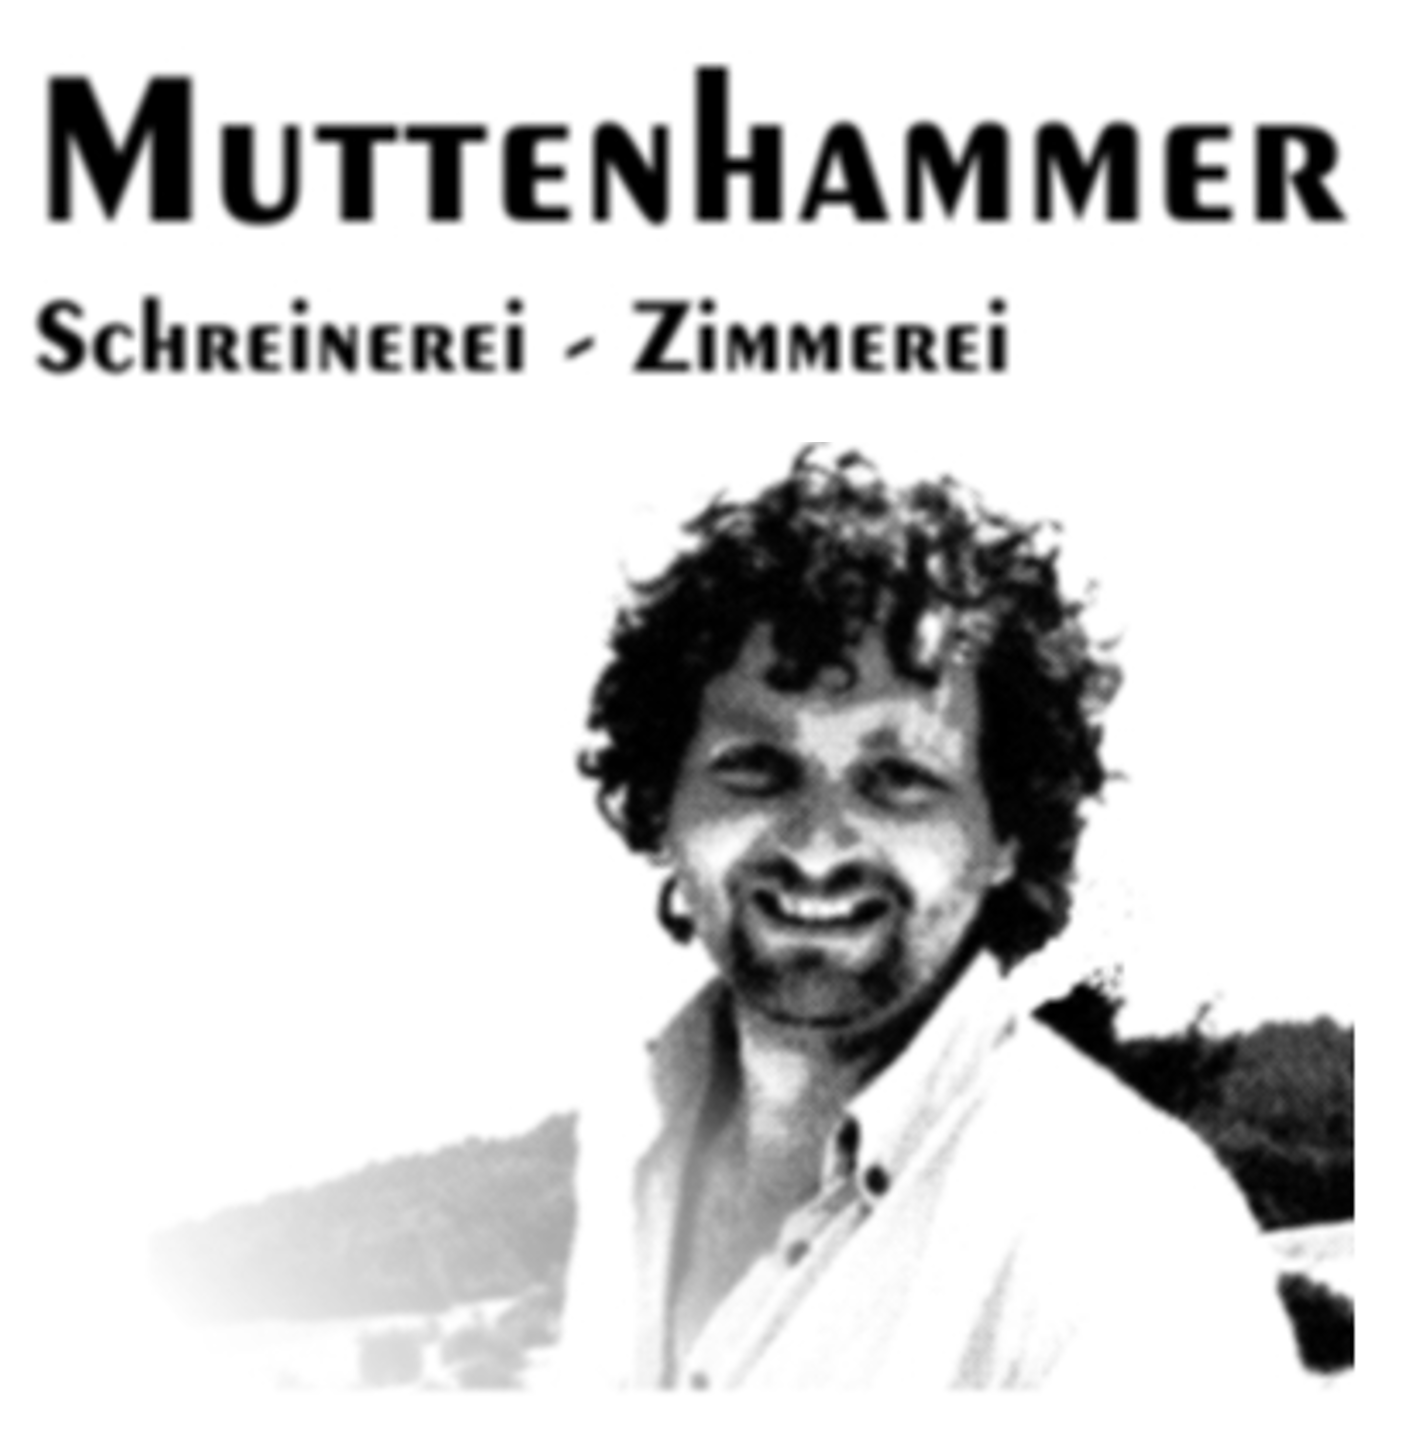 Thomas Muttenhammer